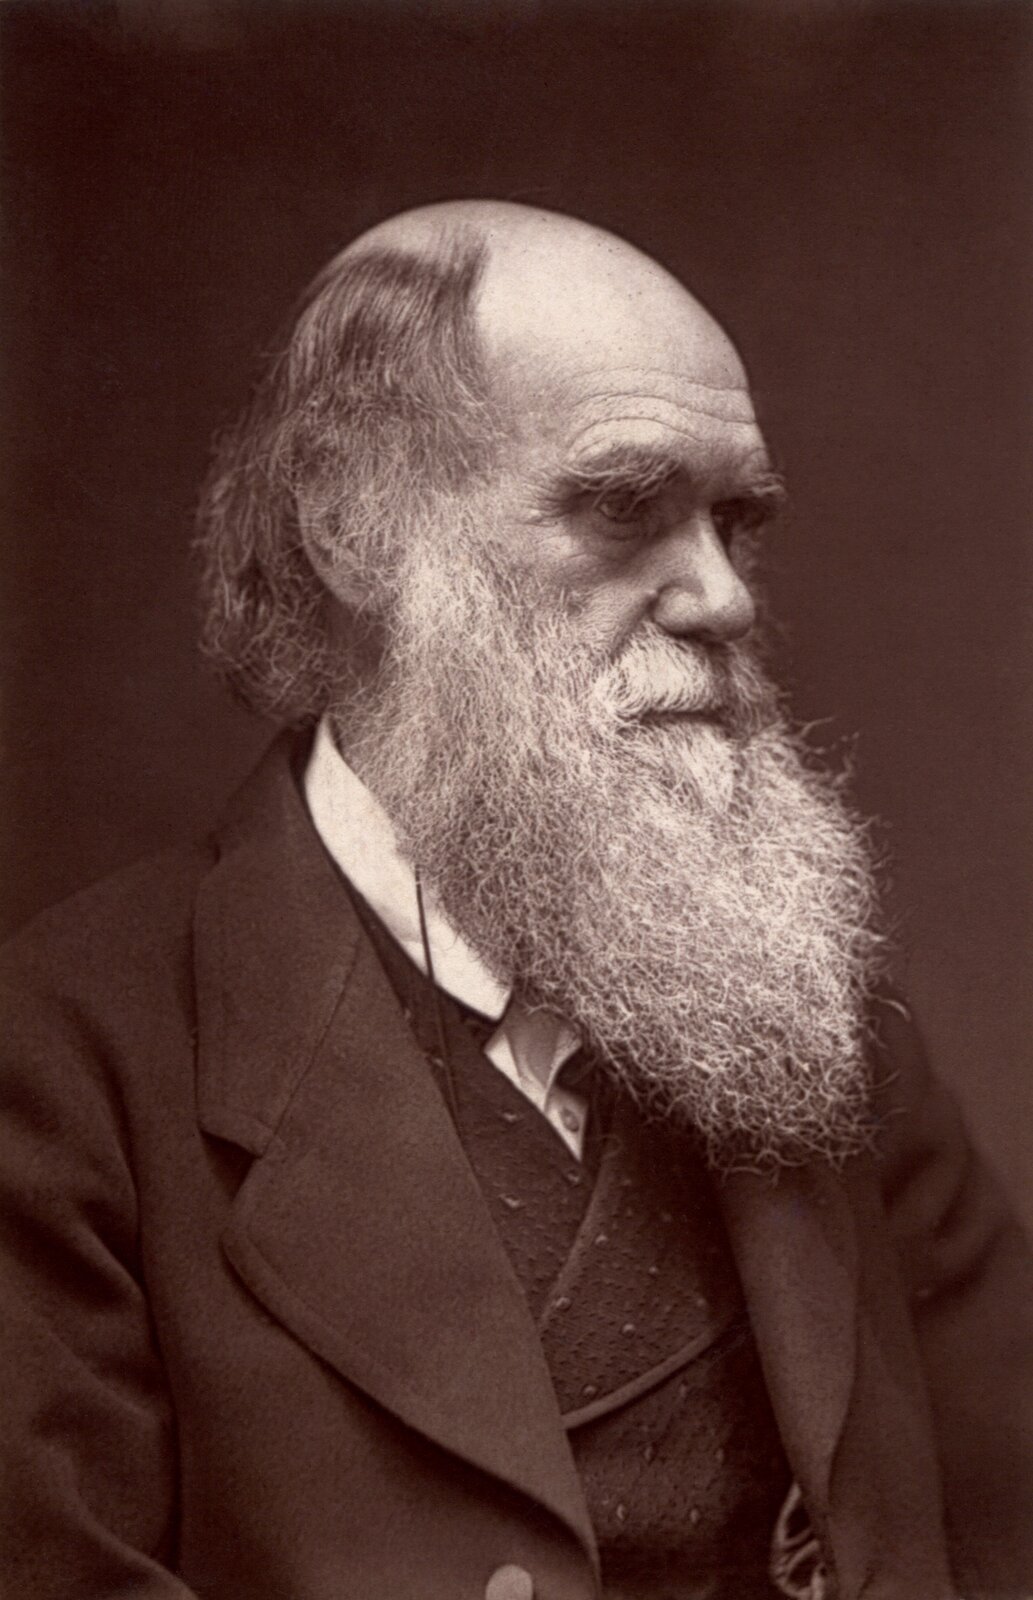 Ilustracja przedstawia profil starszego mężczyzny z długą brodą.